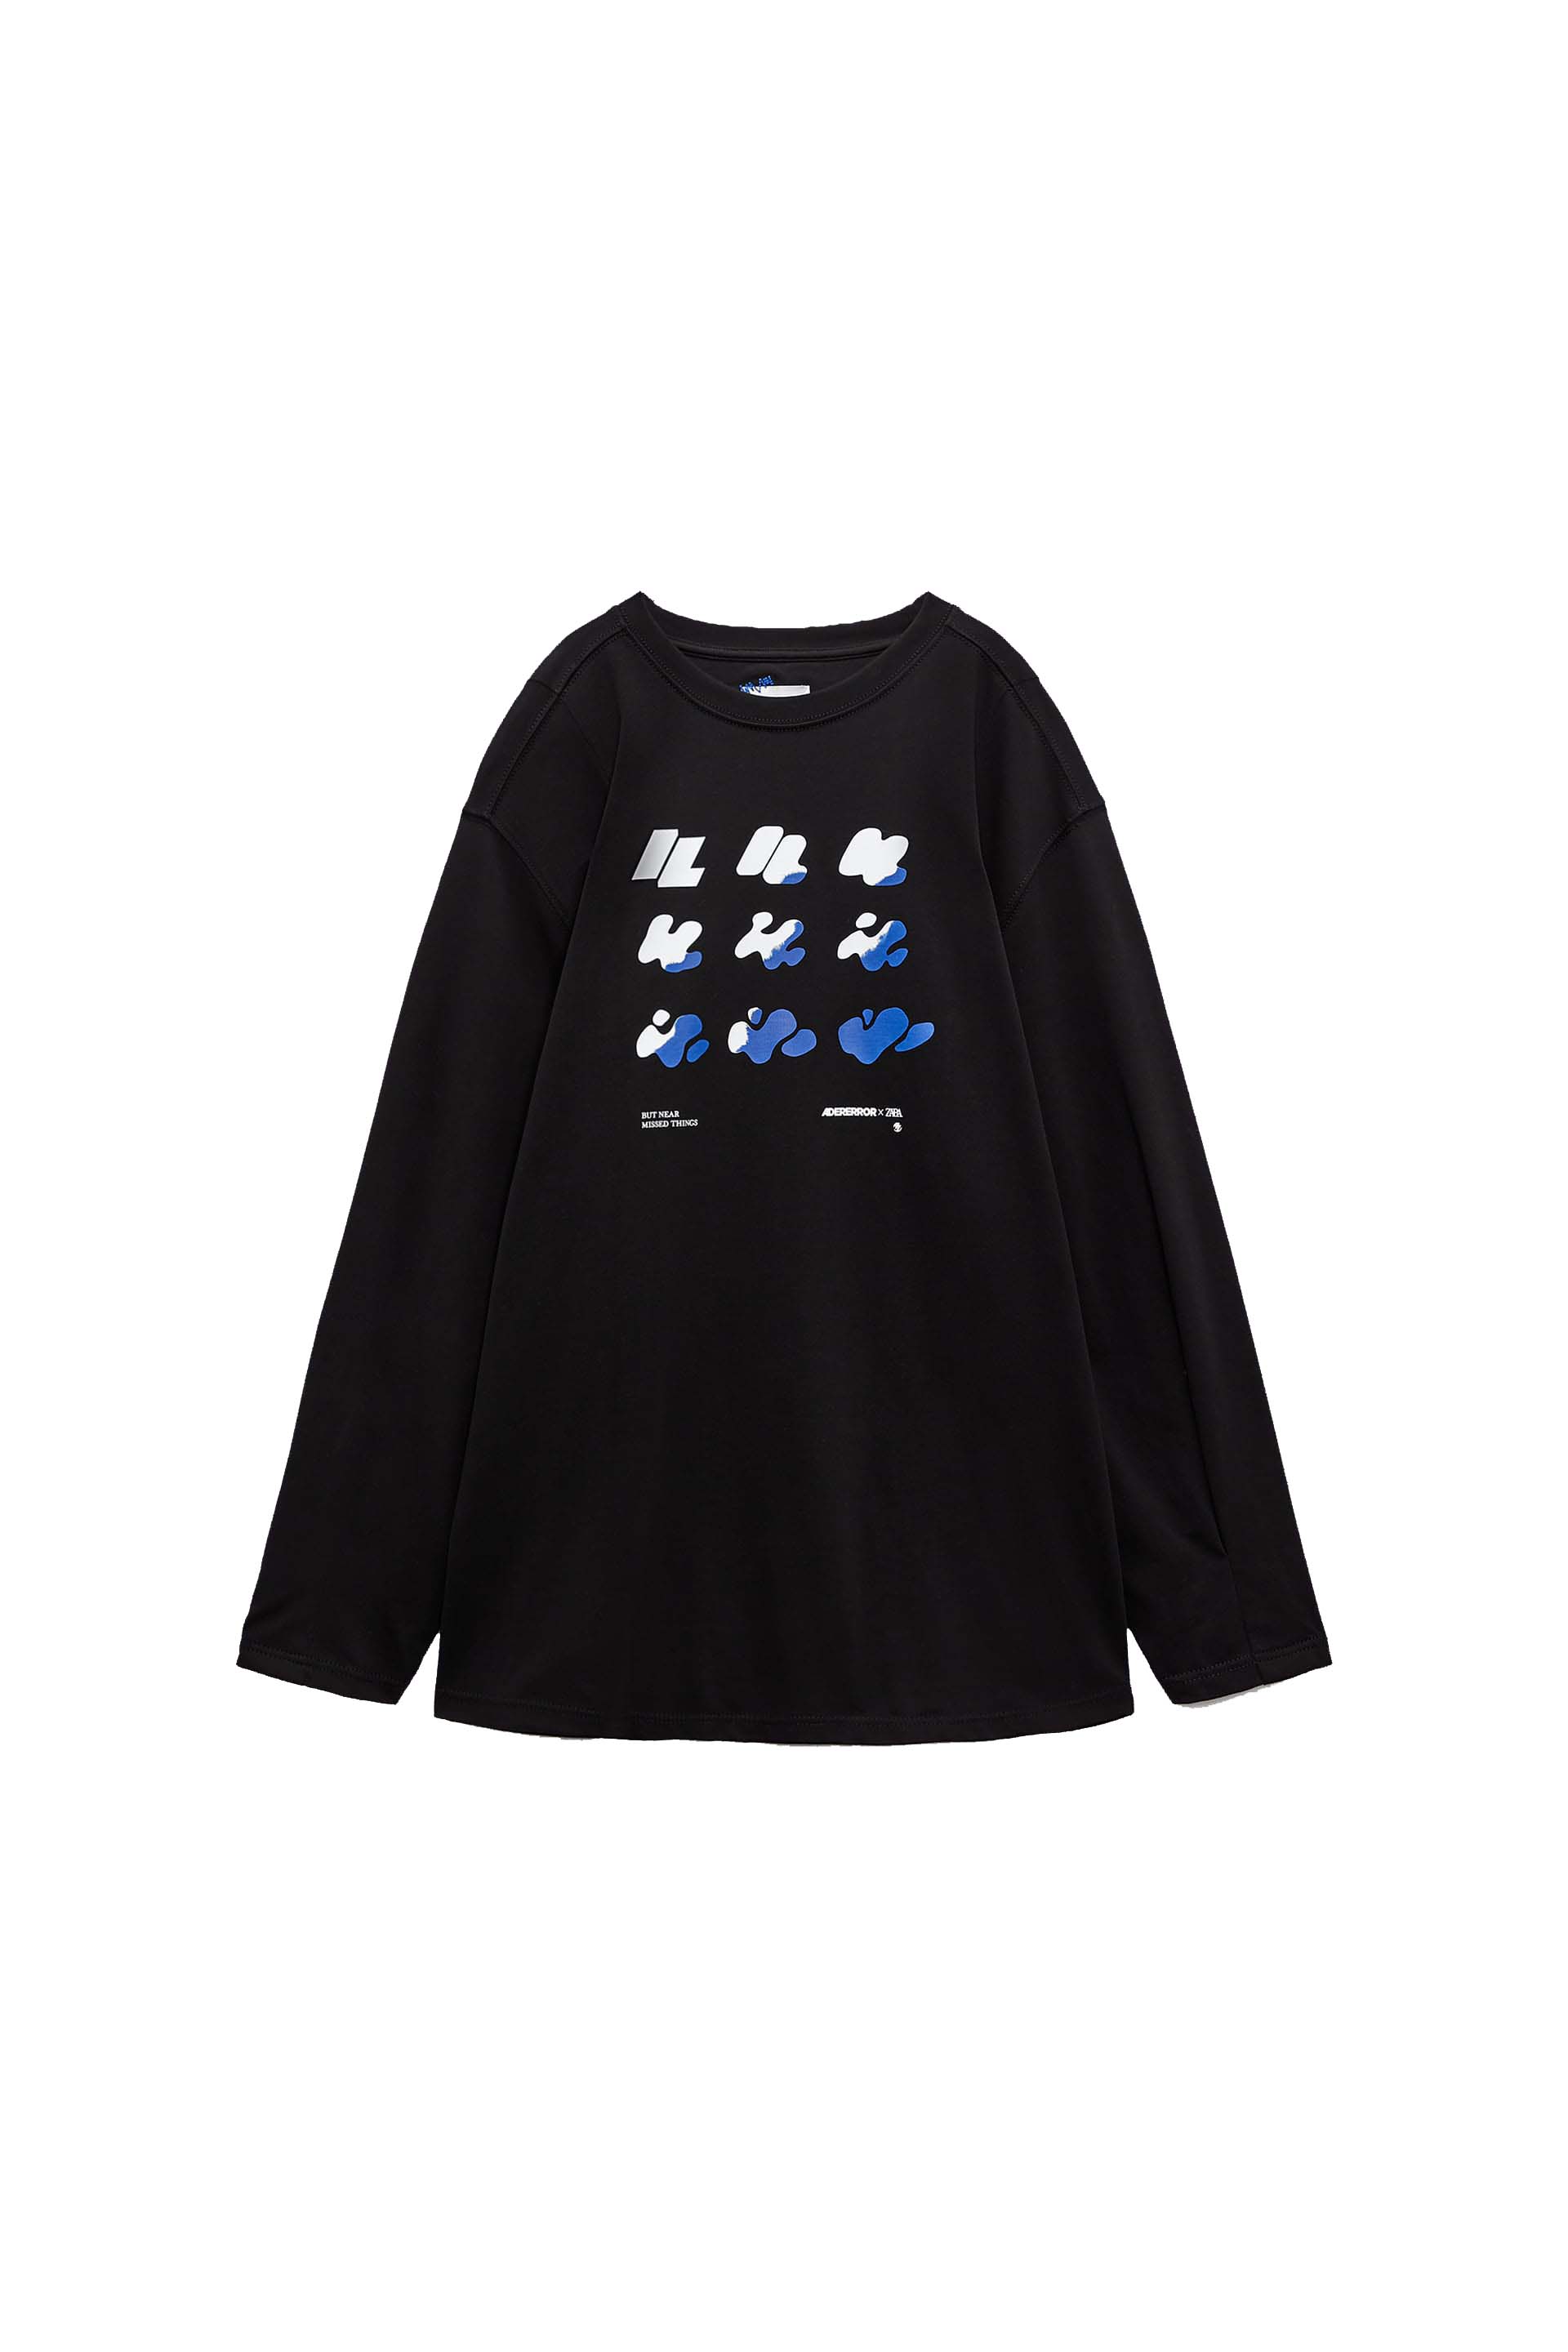 ADER error x Zara Graphic LS T-shirt Black